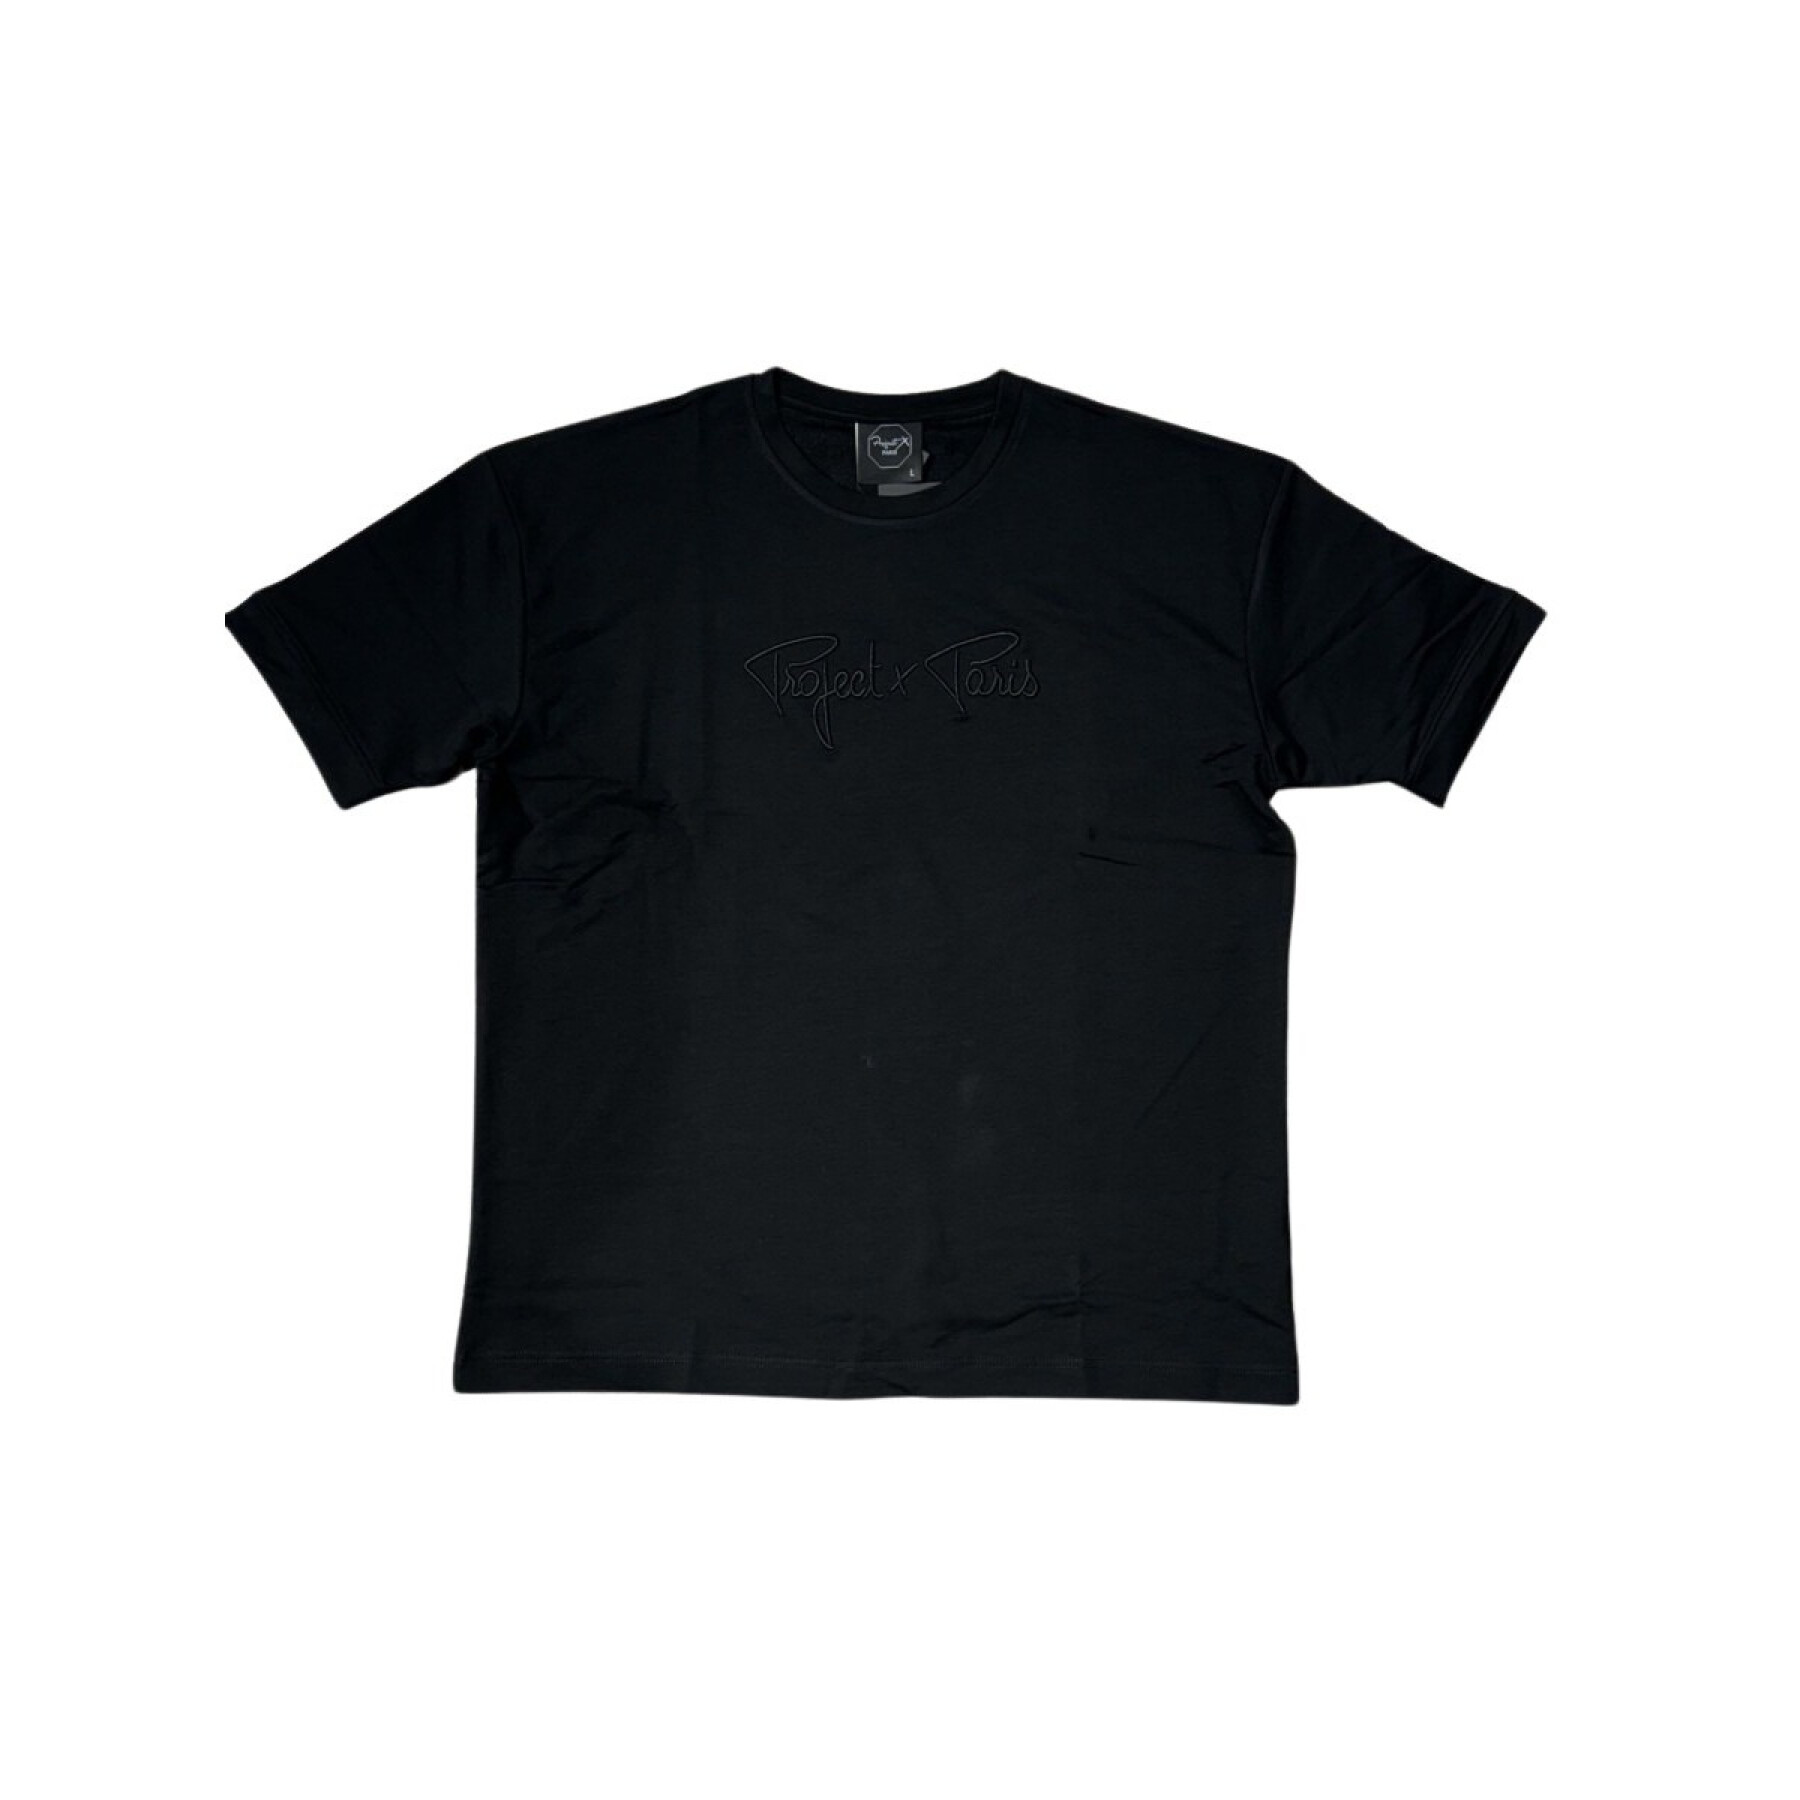 Klassisches T-Shirt mit Full-Logo-Stickerei Project X Paris